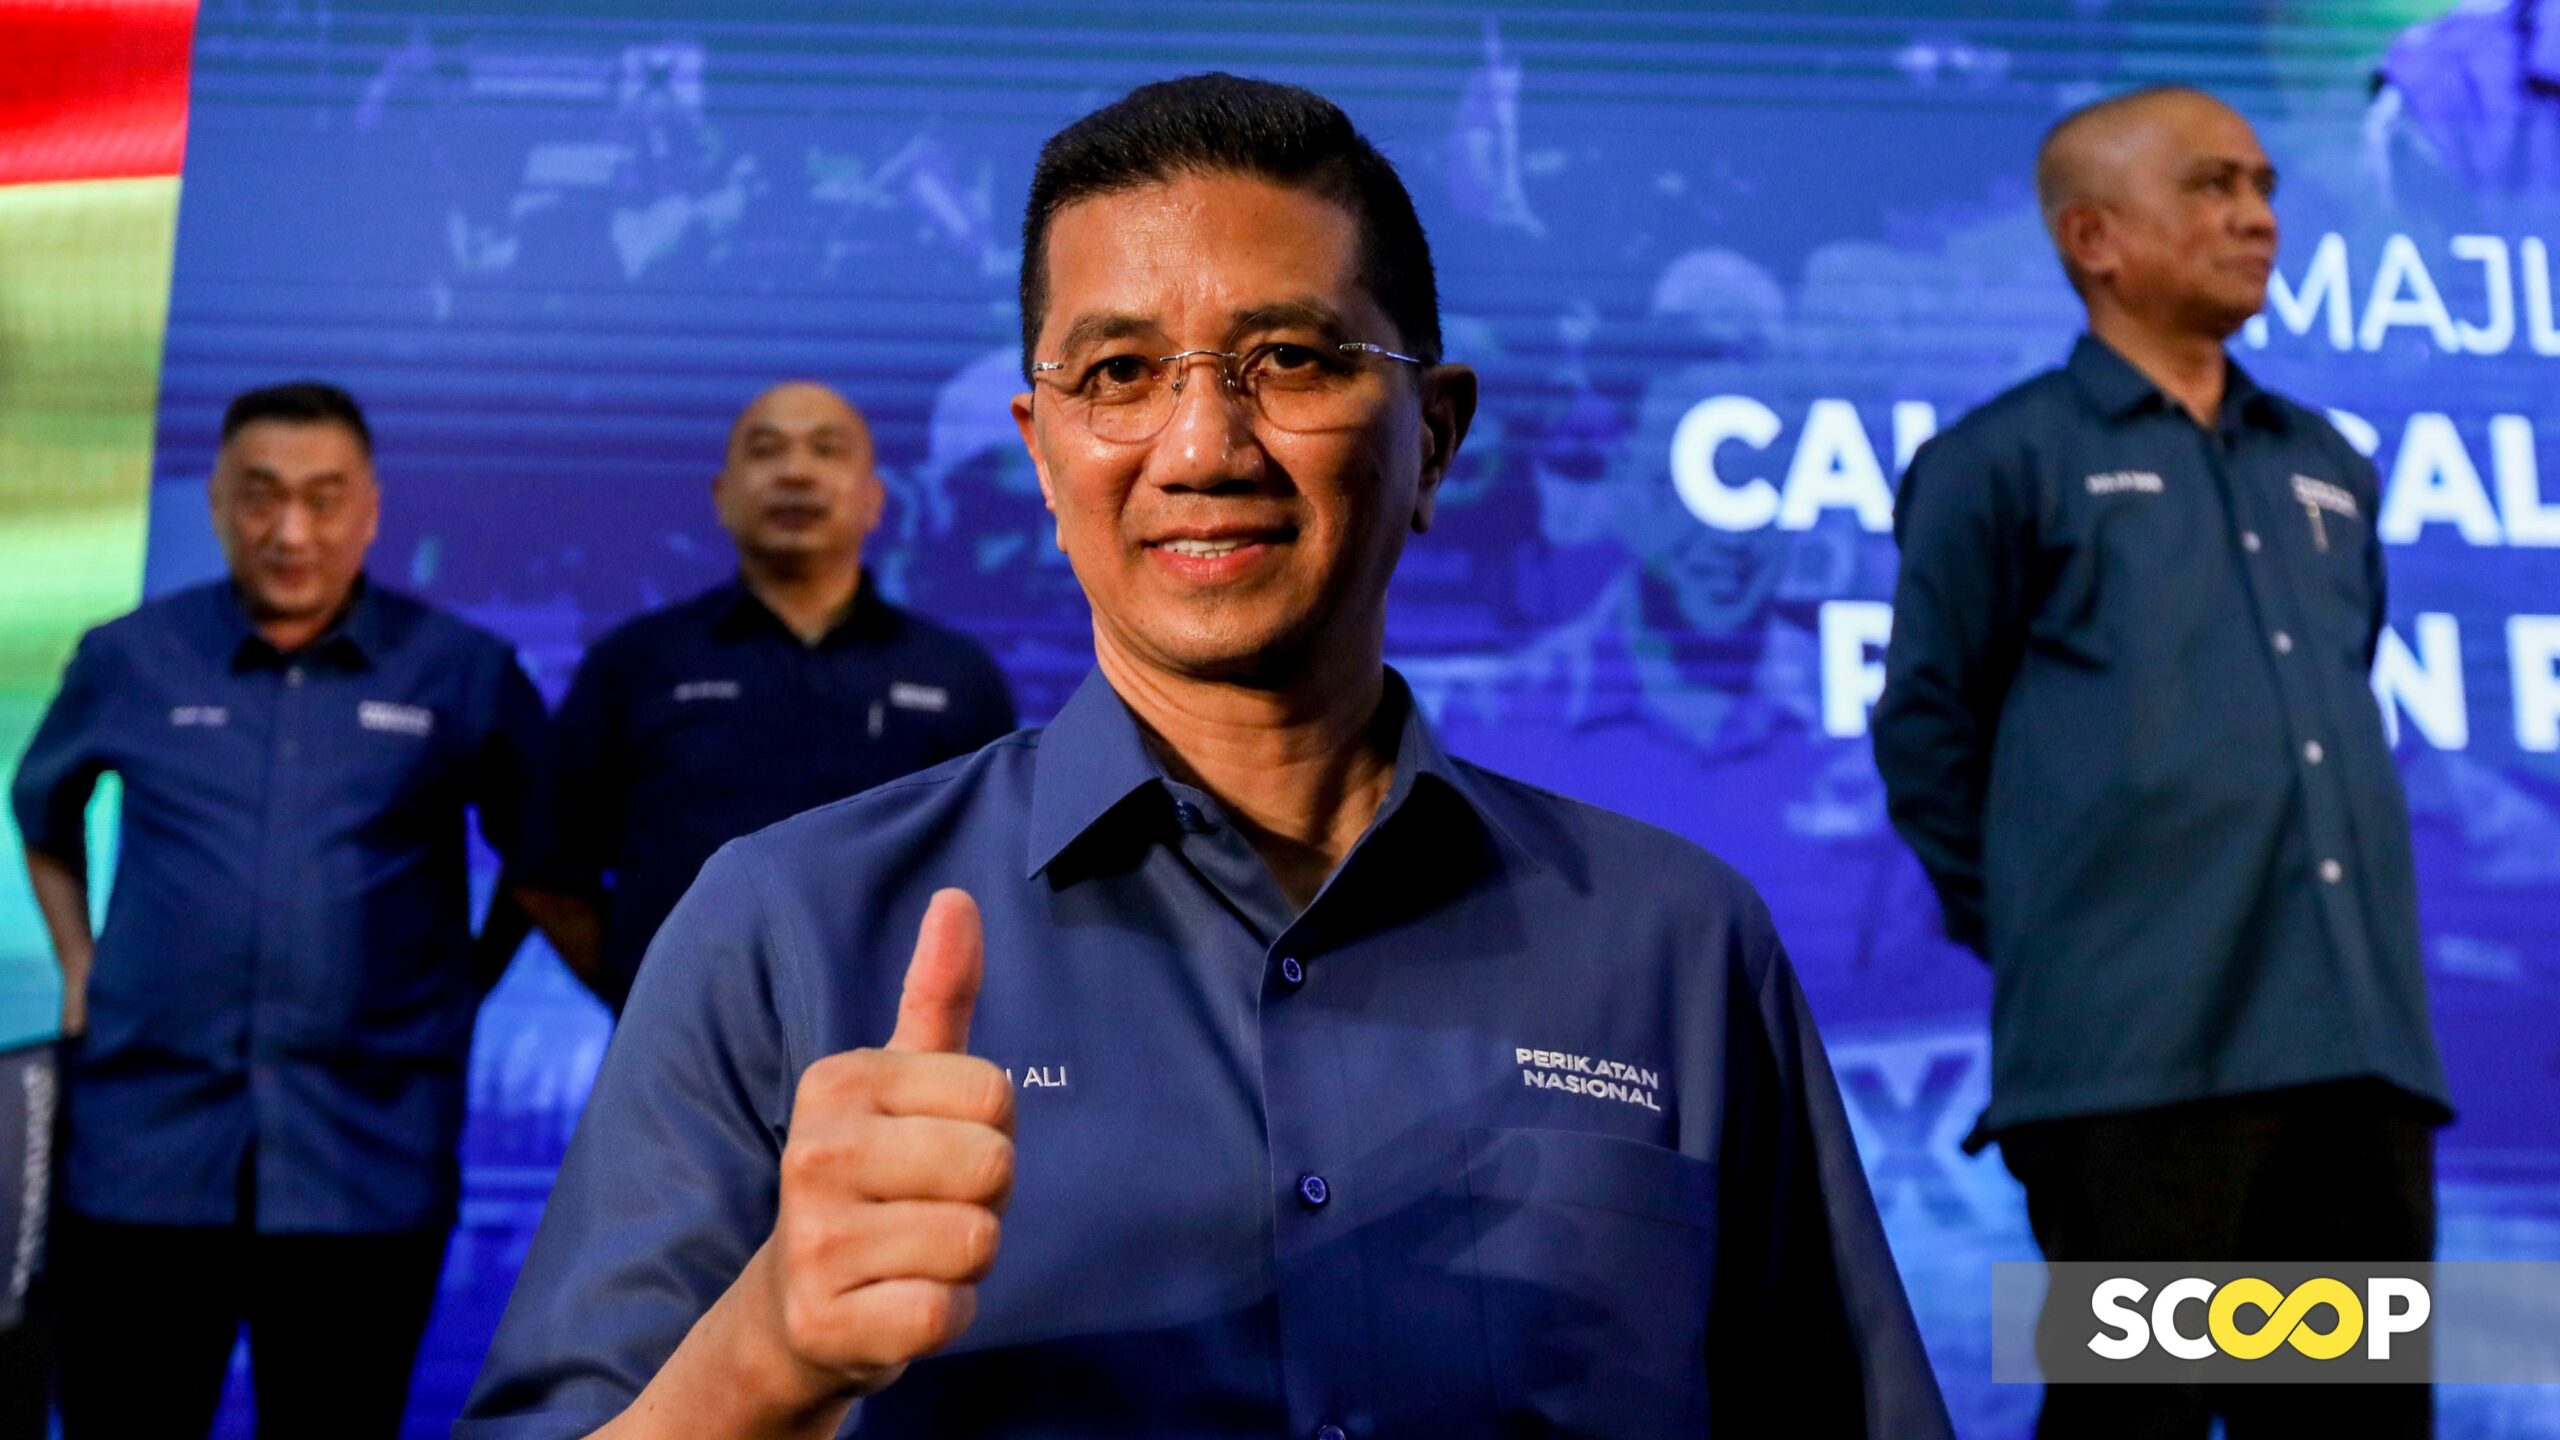 Azmin dilantik Ketua Badan Pimpinan Bersatu Selangor, Hanifah ganti Peja